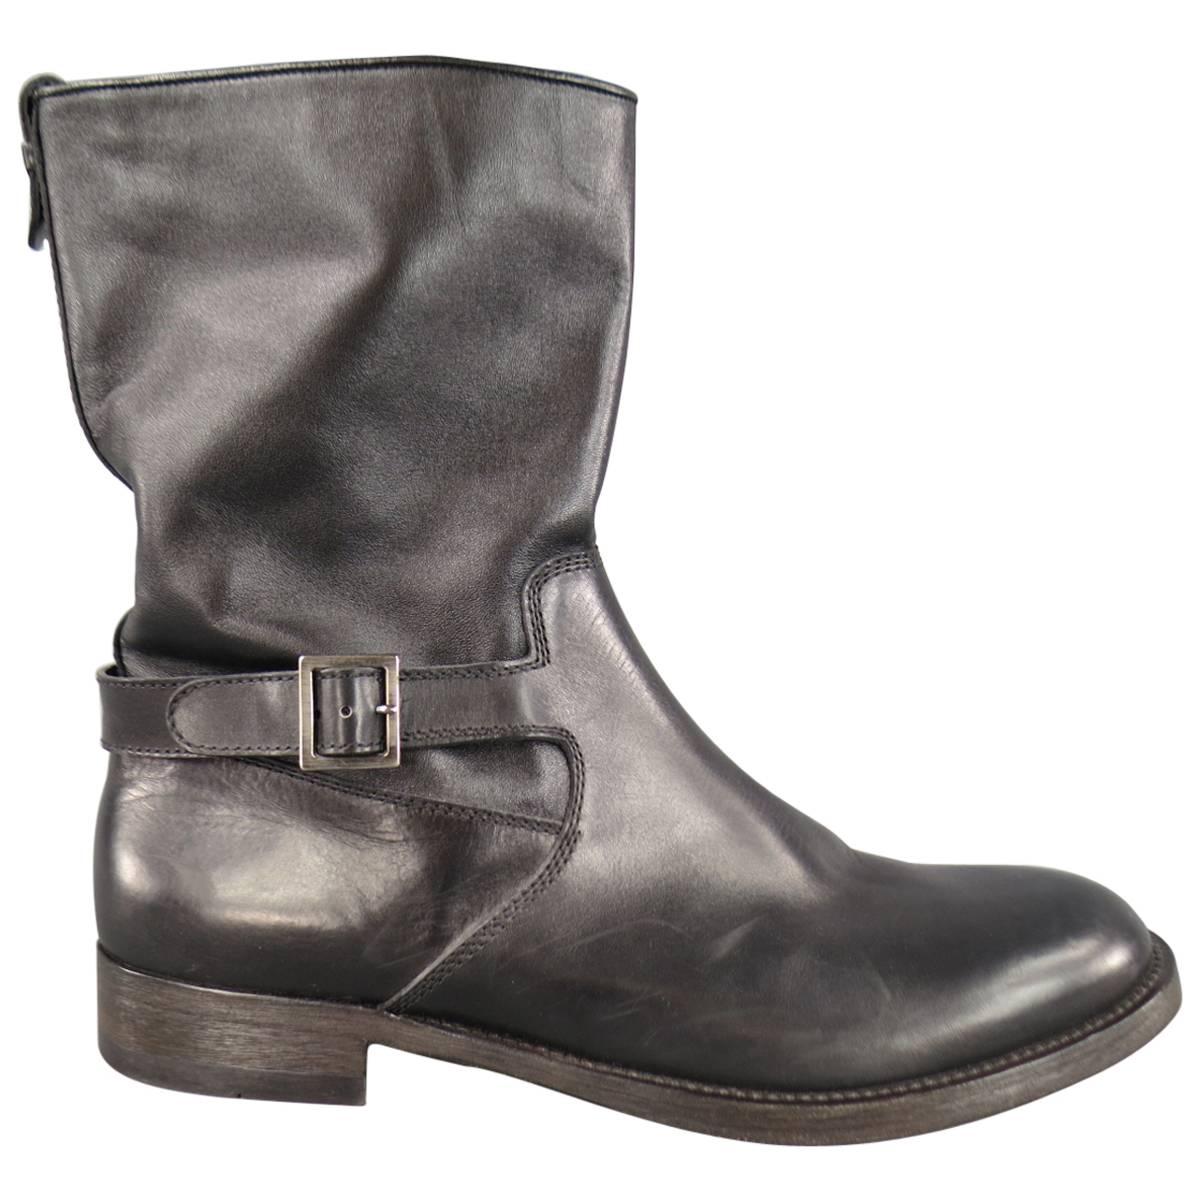 GIORGIO ARMANI Size 11.5 Black Leather Biker Boots